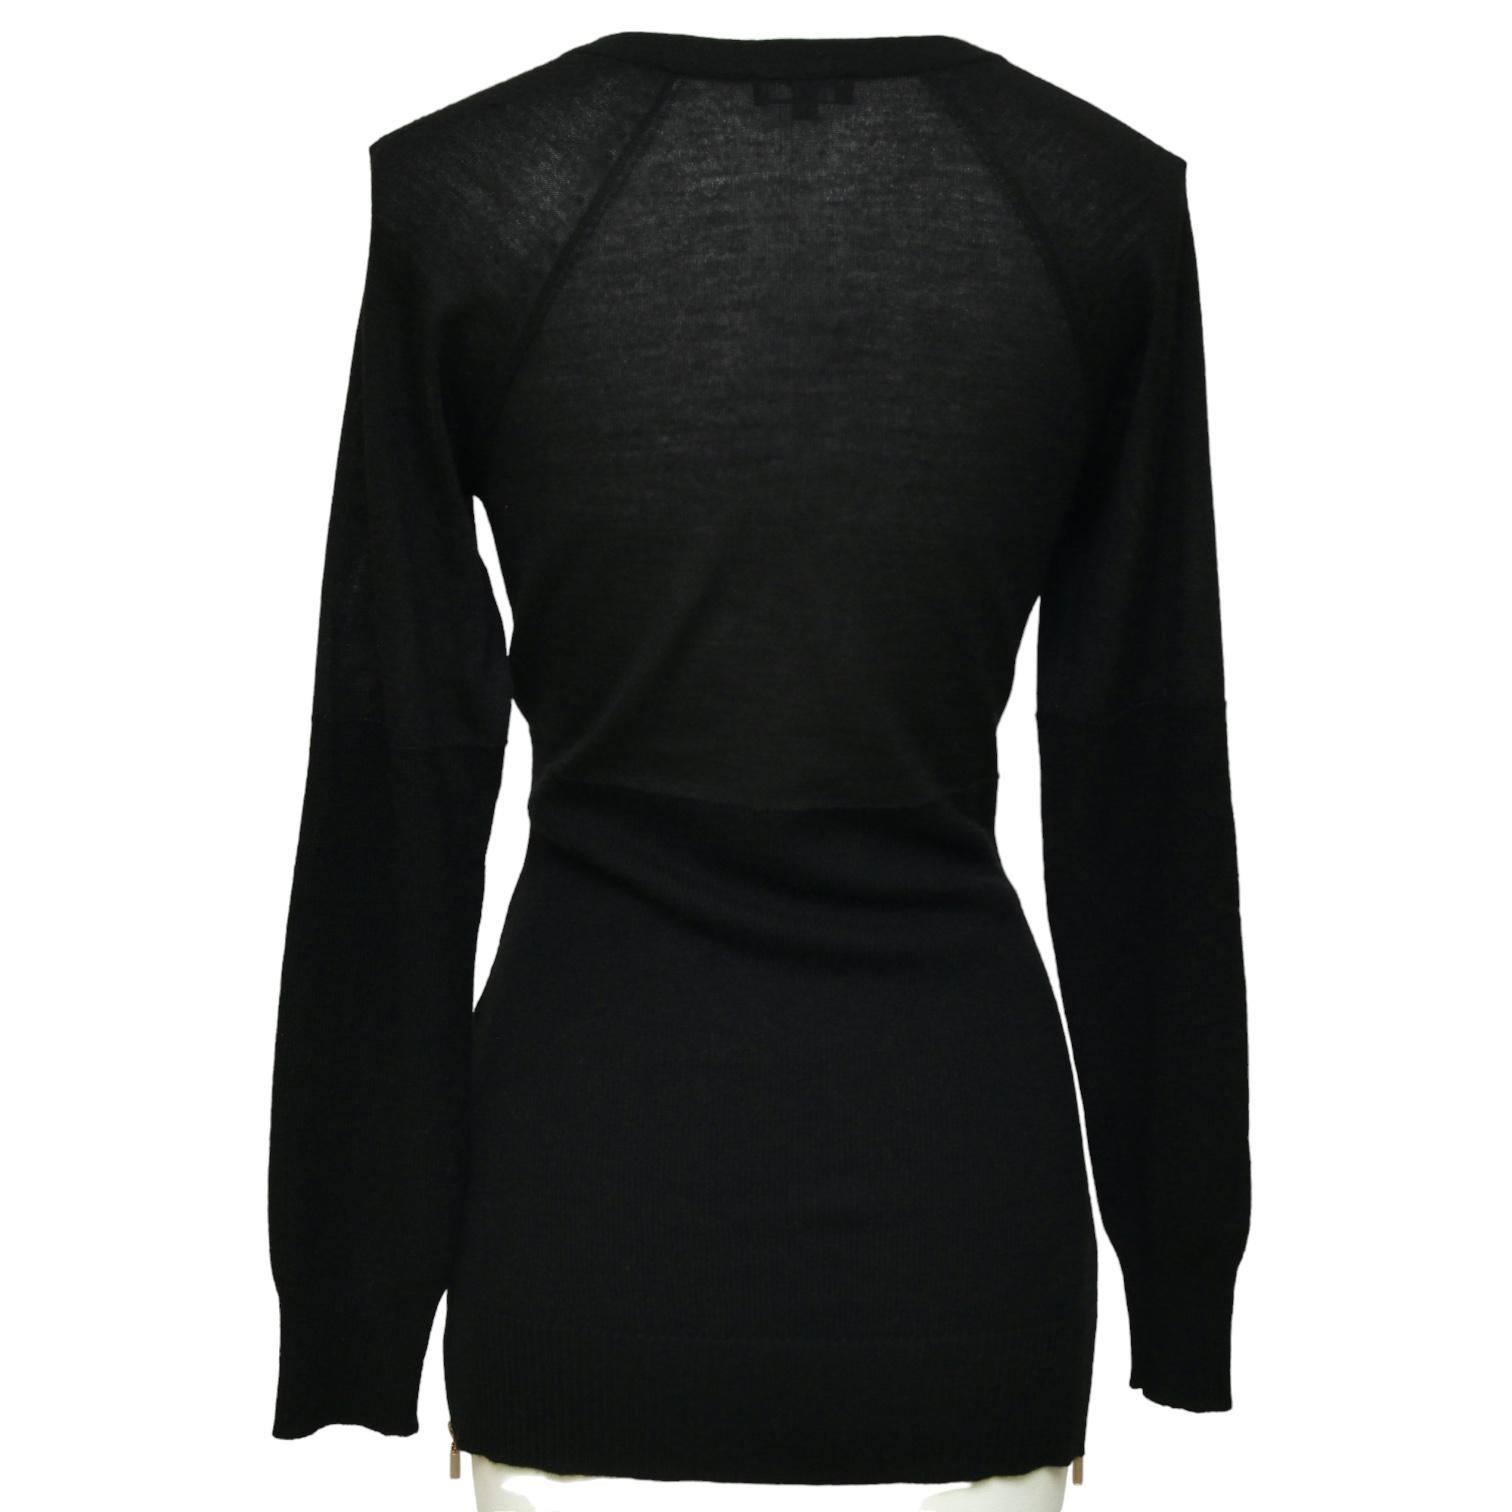 Women's CHANEL Black Sweater Knit Top Long Sleeve Gold Tone Belt Tie Zipper HW Sz 34 For Sale